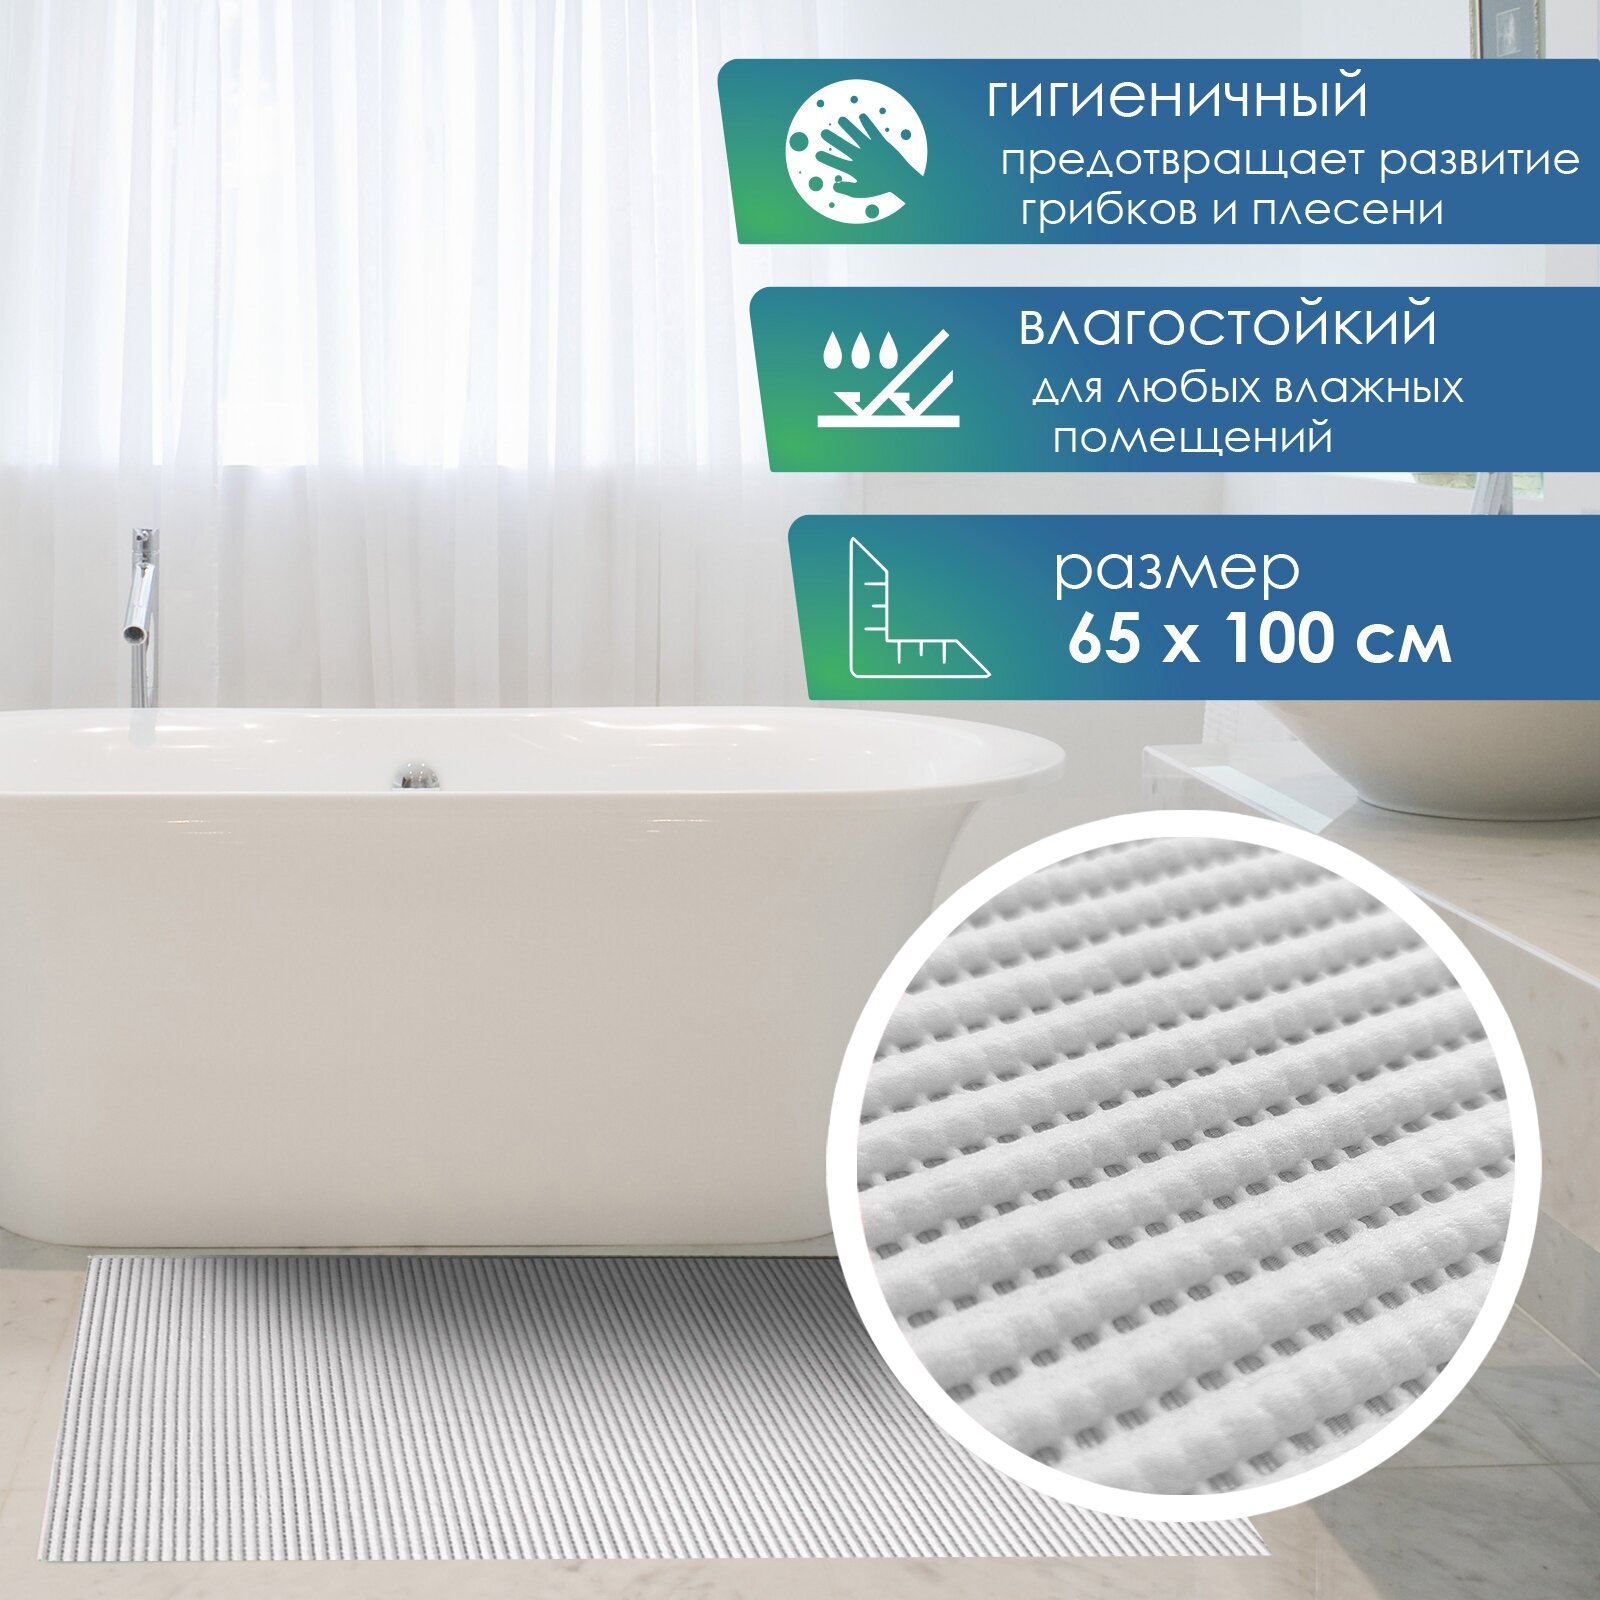 Коврик напольный VILINA для ванной и туалета из вспененного ПВХ 65 х 100 см однотонный серый